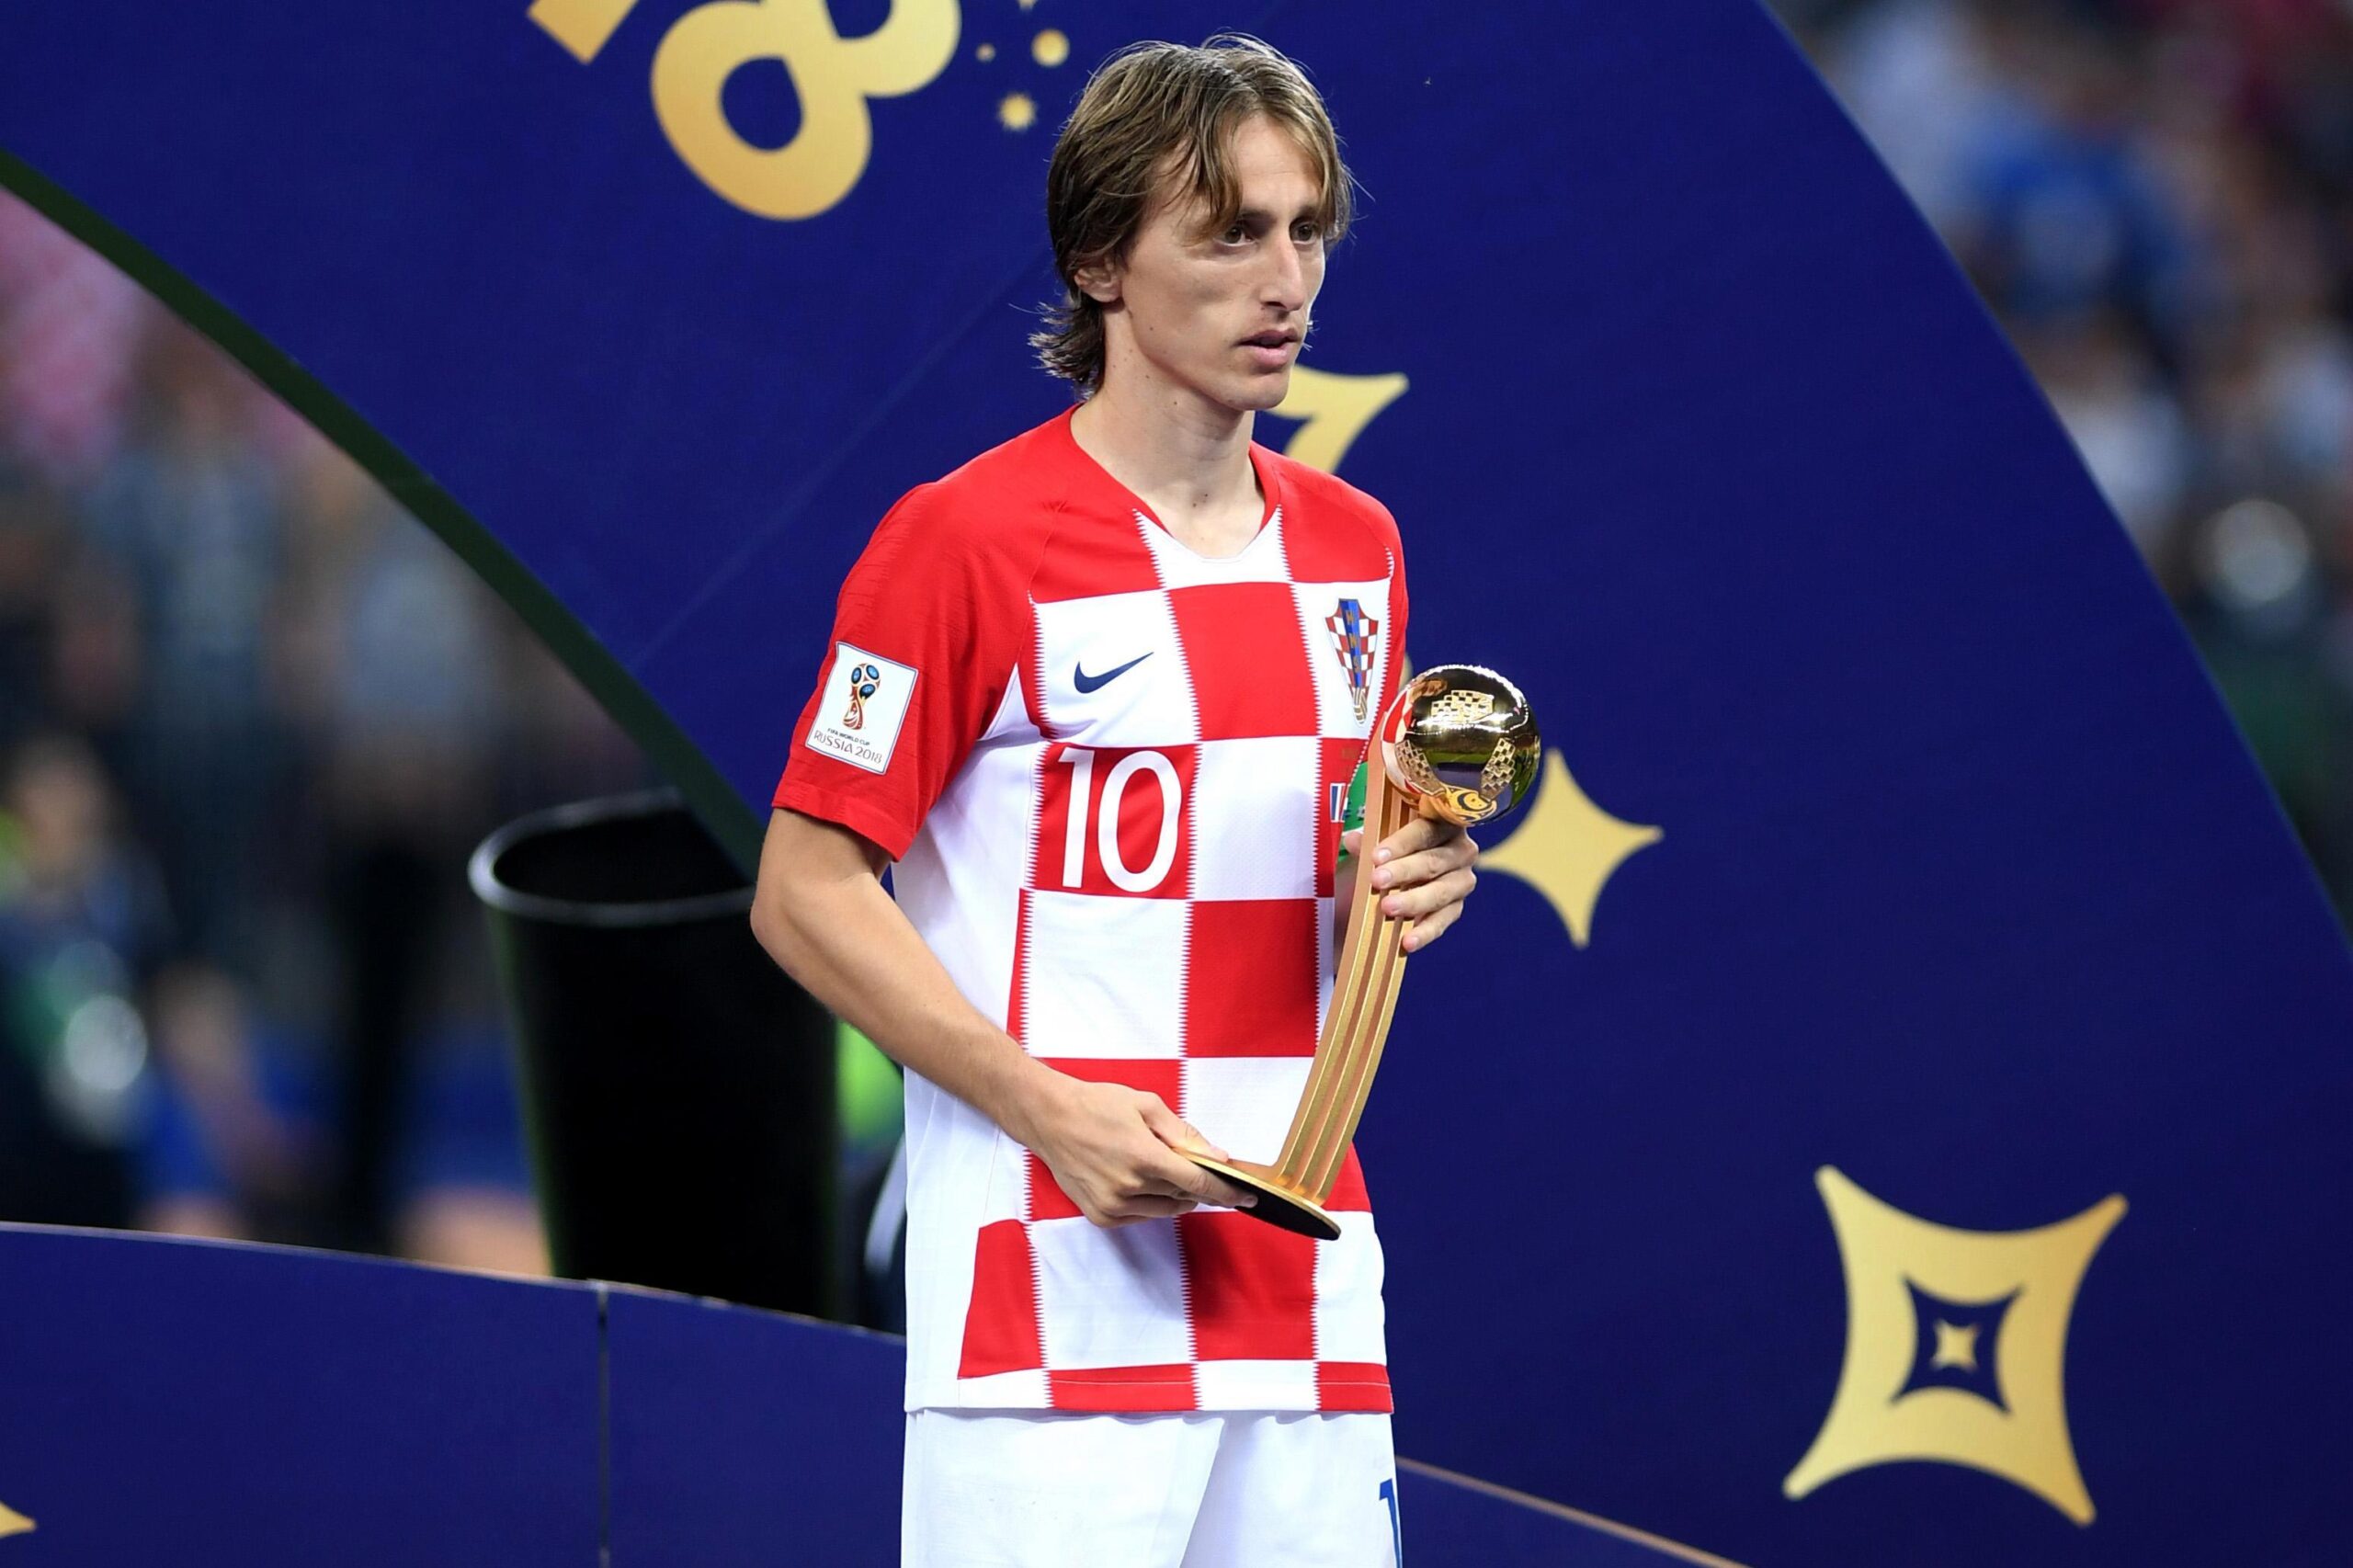 Hình ảnh Luka Modric nhận giải Cầu thủ xuất sắc nhất trong trận chung kết World Cup 2018 (ảnh: Internet)